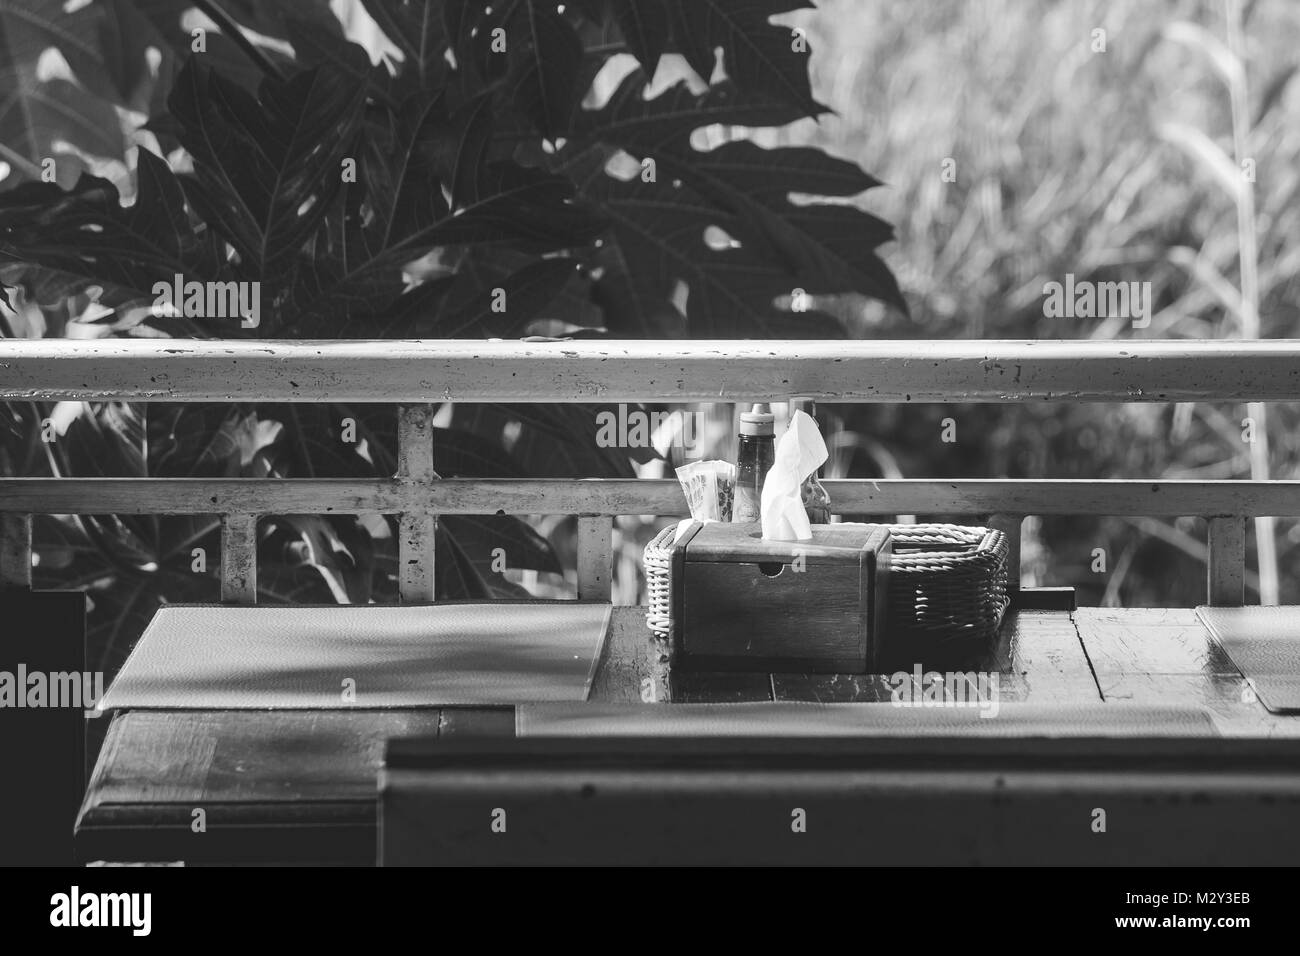 Holz- gewebe, und Garnieren in Warenkorb (Salz, Pfeffer, Zahnstocher, Soße) auf Tisch mit grünen Bäumen und Sonnenlicht Hintergrund in den Morgen. Stockfoto